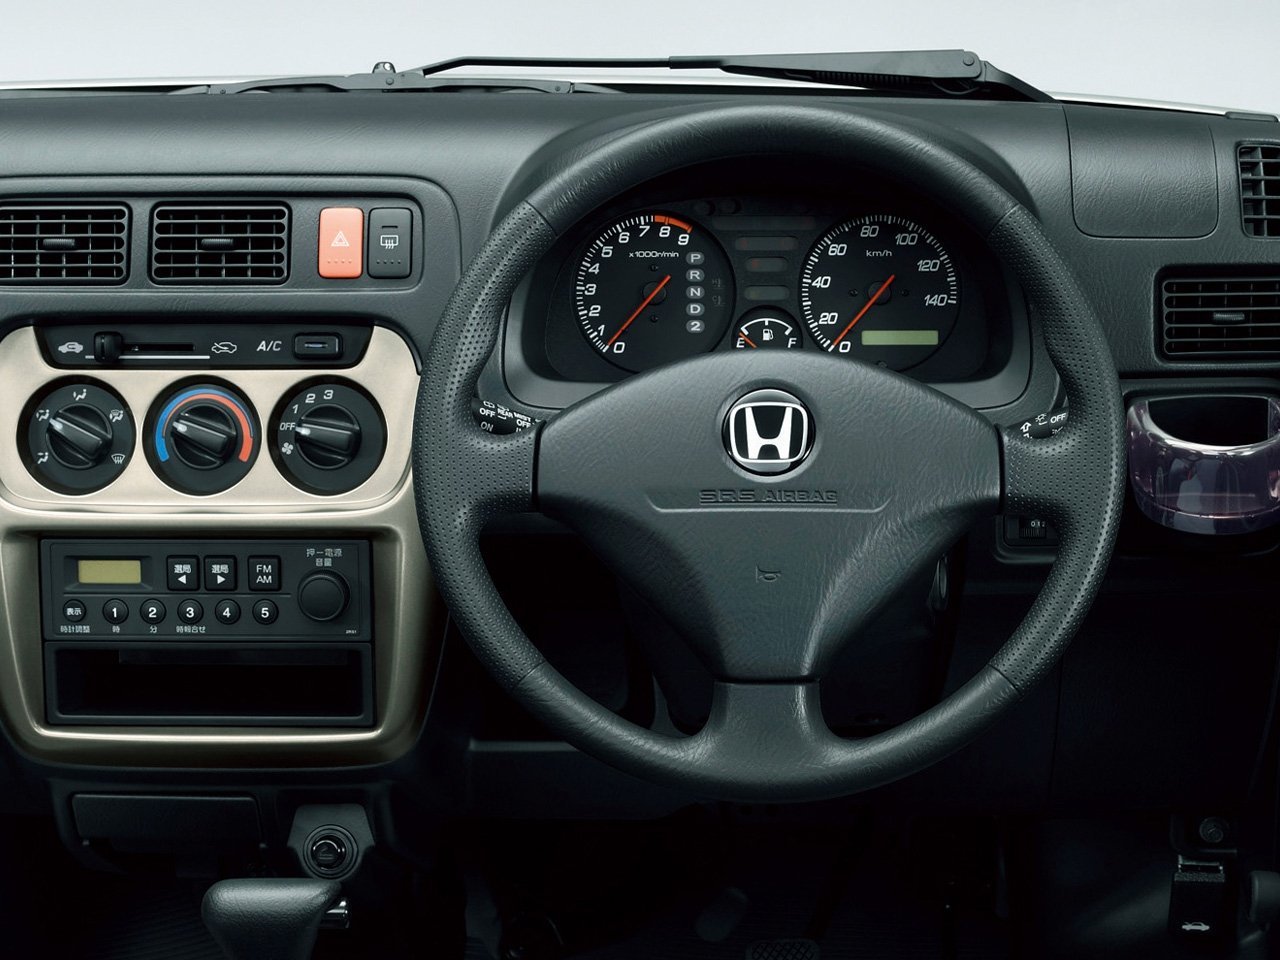 минивэн Honda Acty 1999 - 2016г выпуска модификация 0.7 AT (46 л.с.)